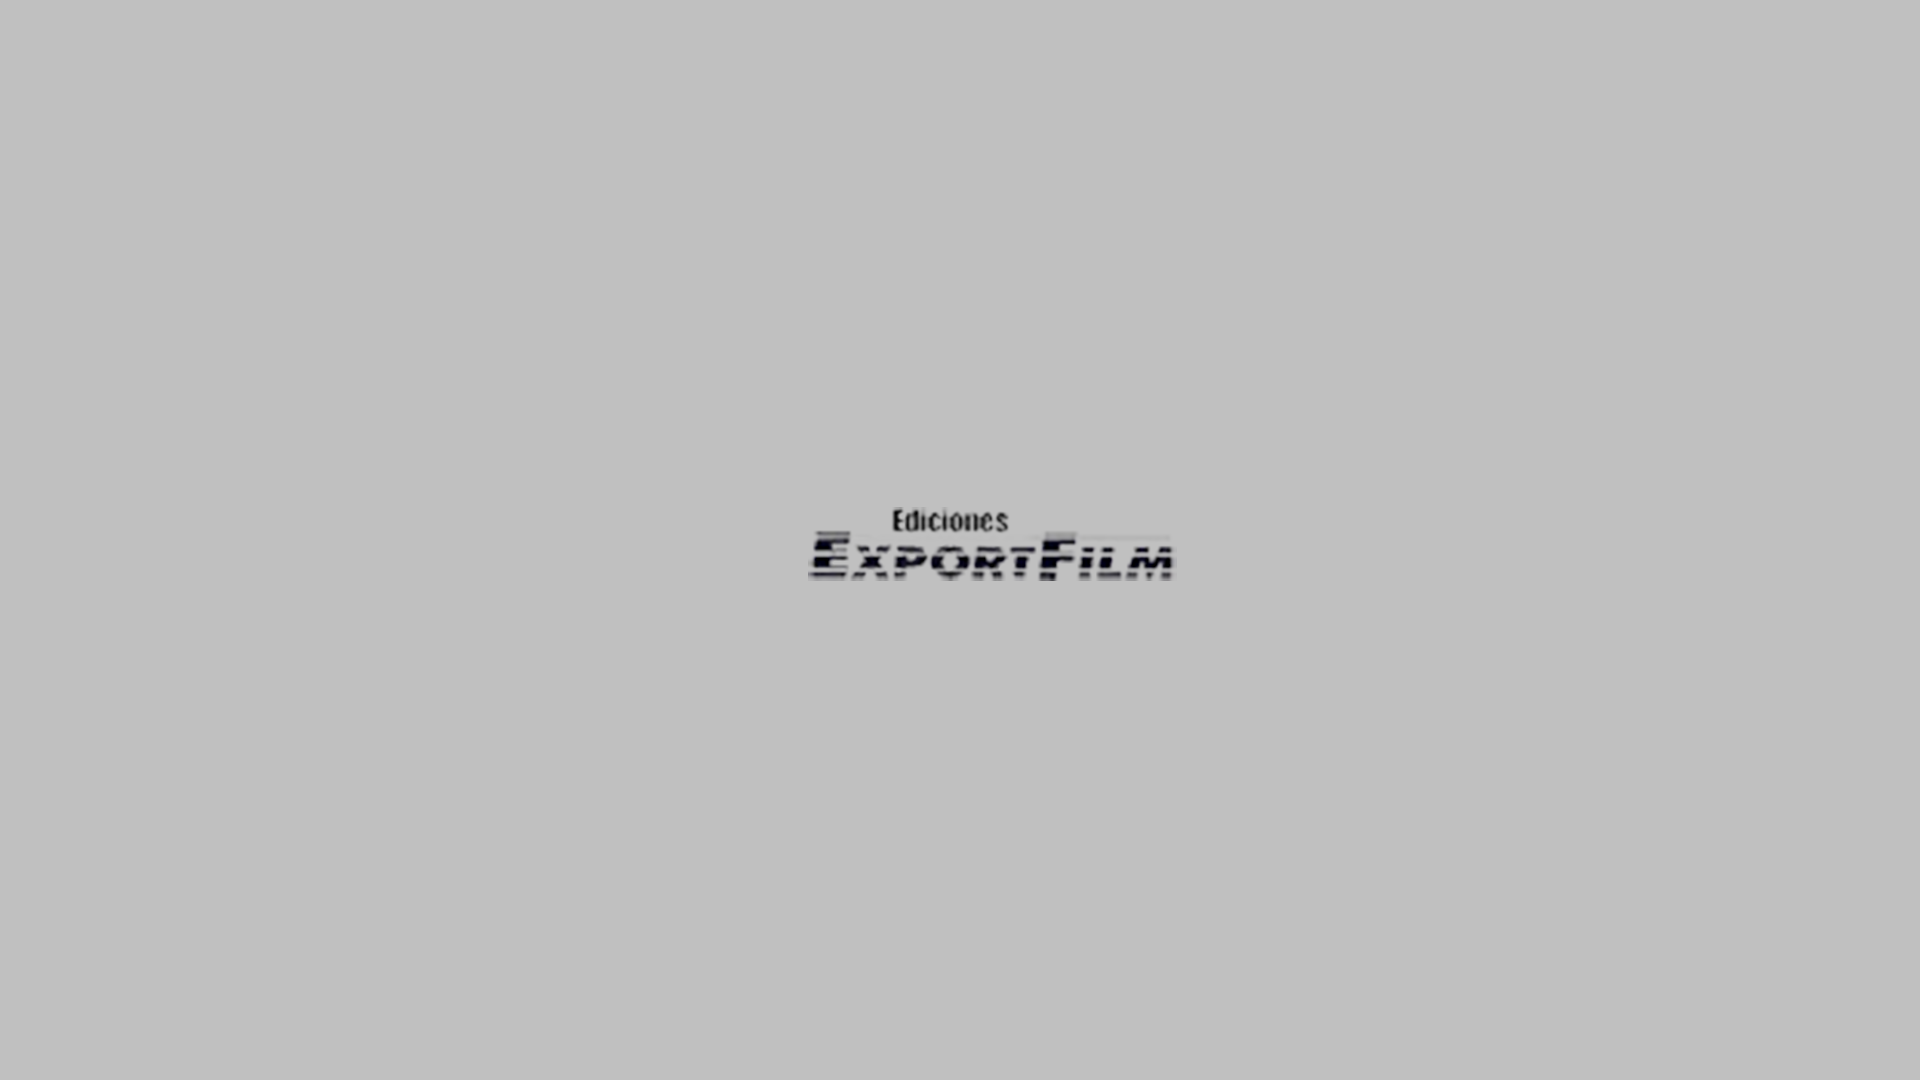 Exportfilm, web hecha por murciegalo en 1998